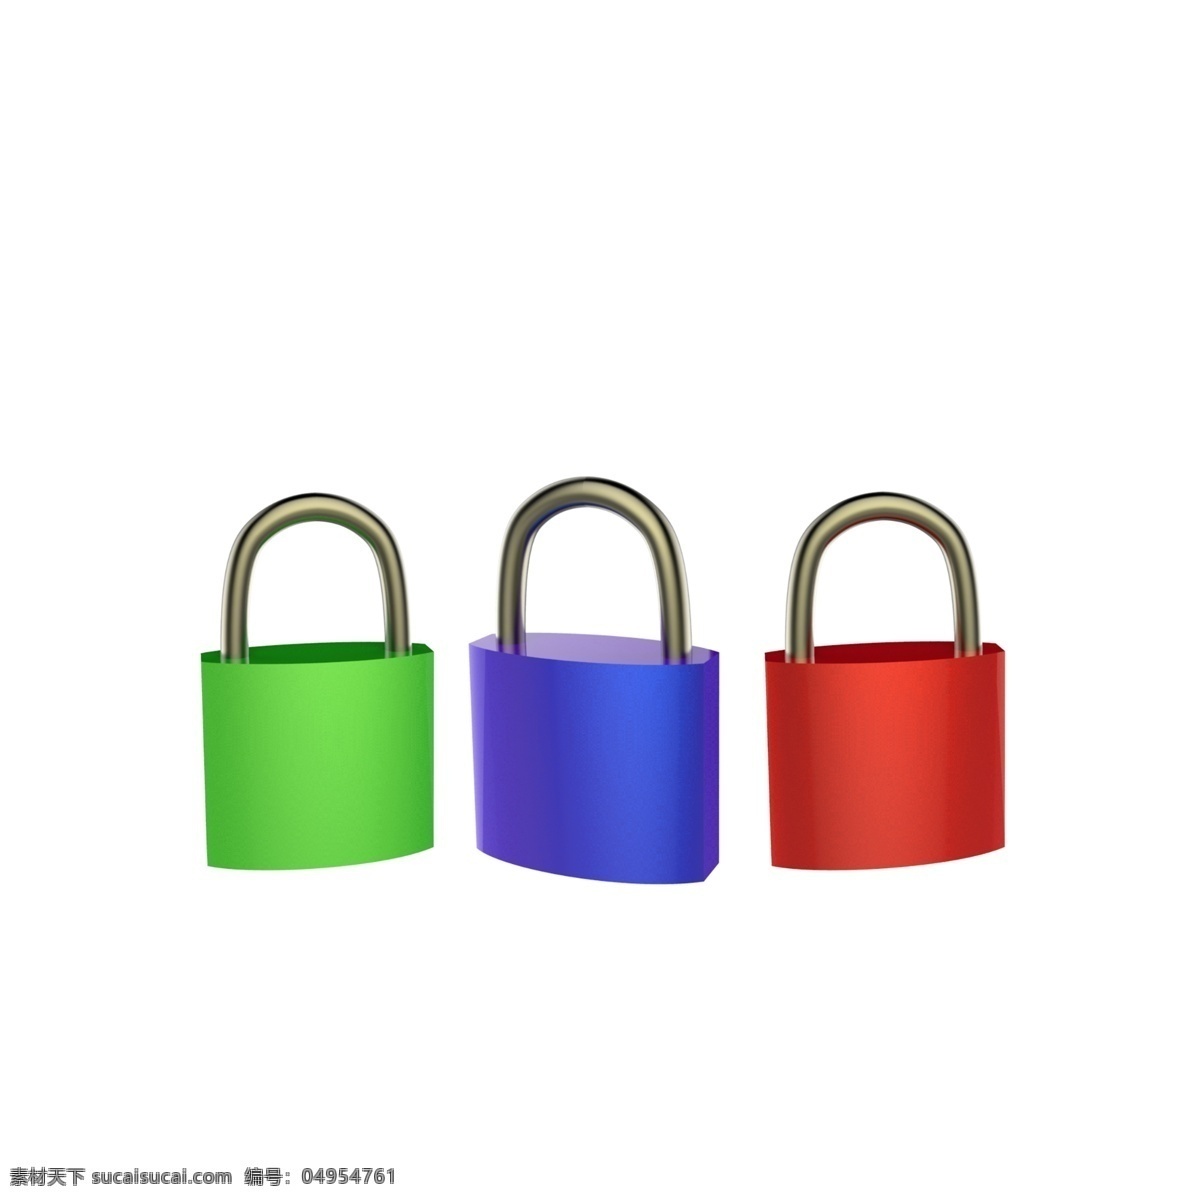 仿真彩色的锁 锁 紫色的锁 红色的锁 绿色的锁